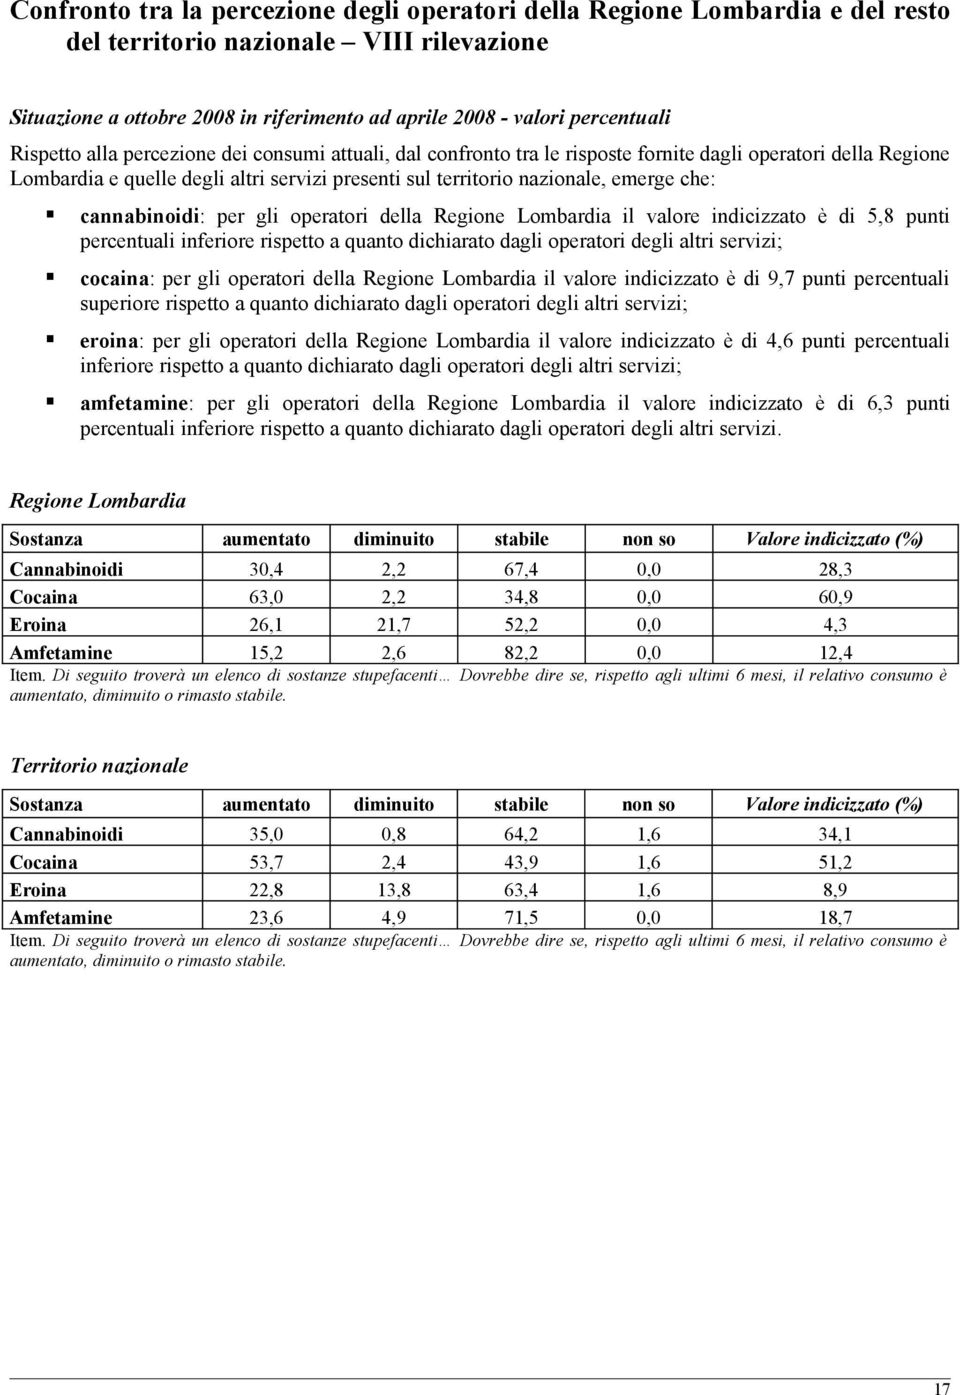 cannabinoidi: per gli operatori della Regione Lombardia il valore indicizzato è di 5,8 punti percentuali inferiore rispetto a quanto dichiarato dagli operatori degli altri servizi; cocaina: per gli